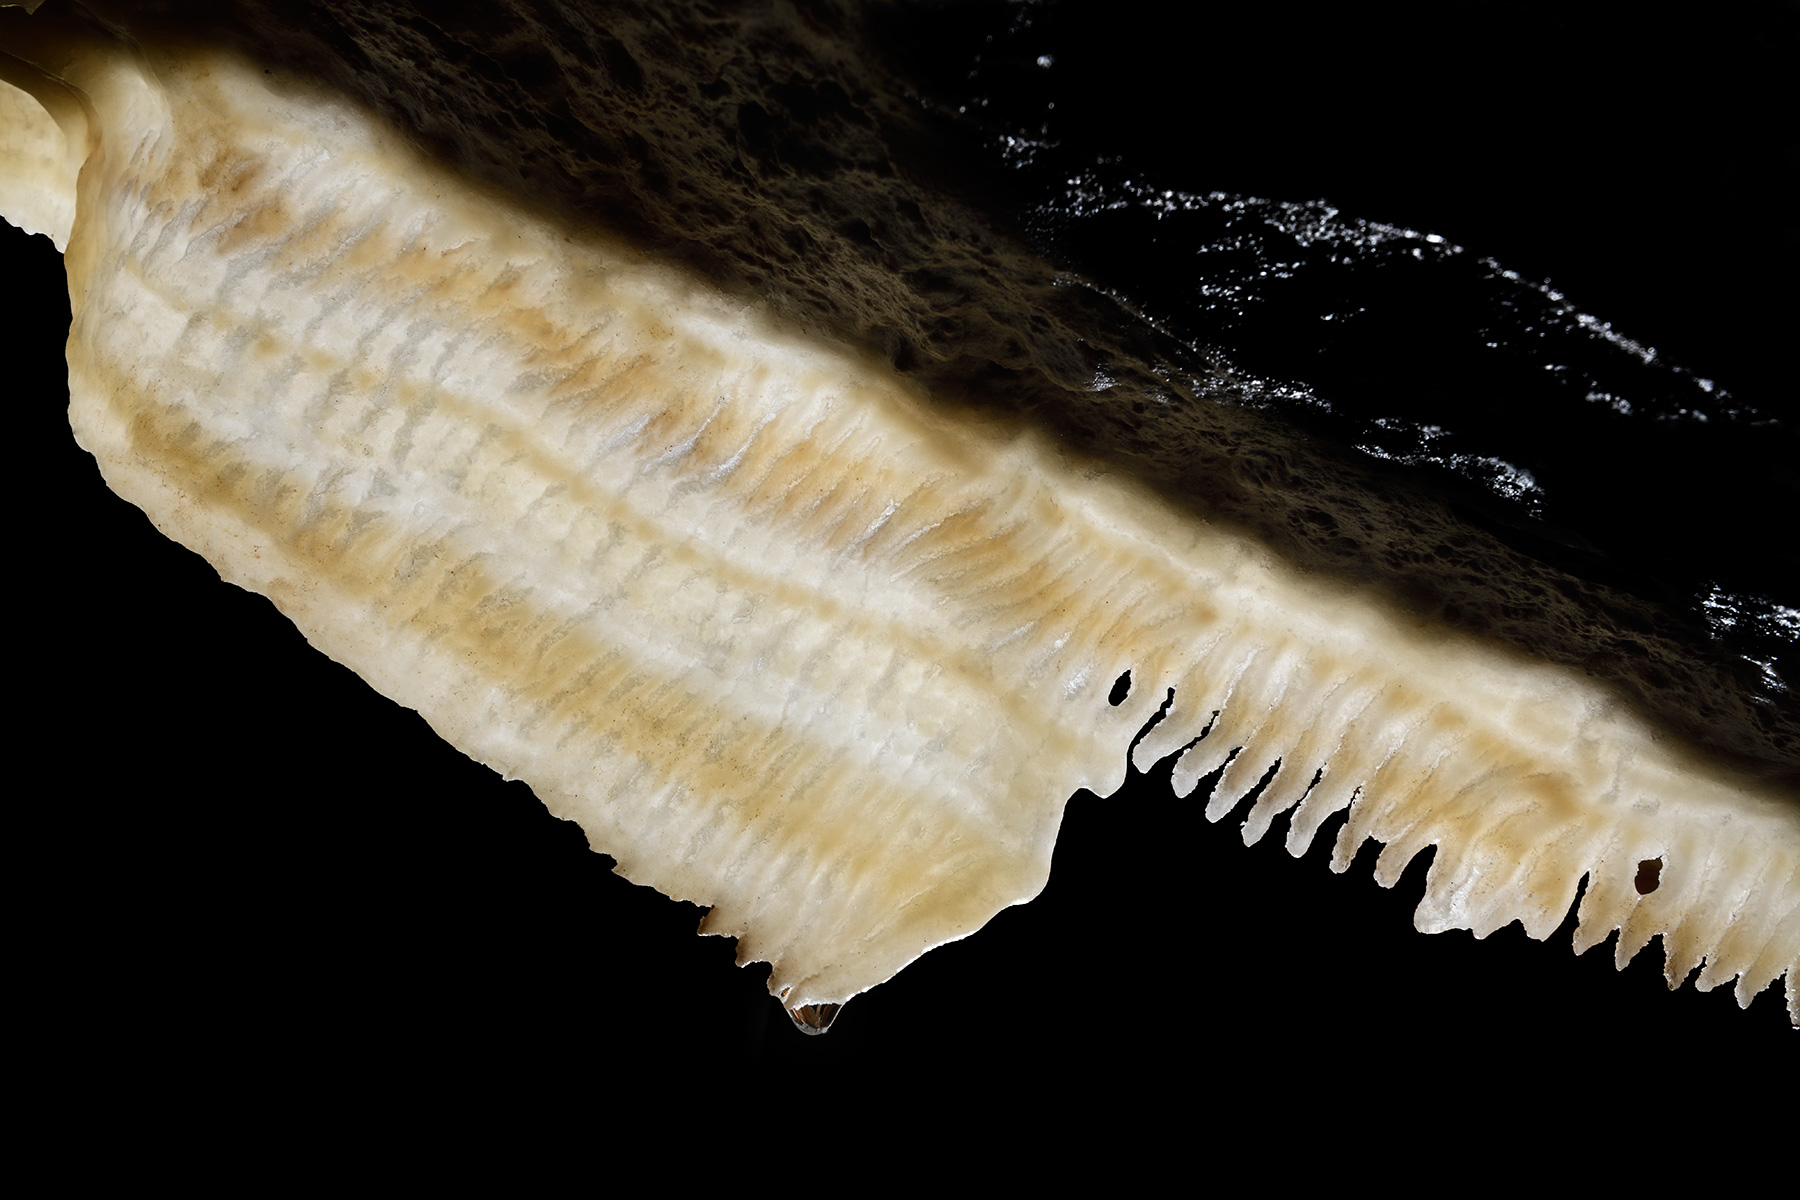 Grotte de Han (réseau Sud) - Détail d'une petite draperie blanche au plafond